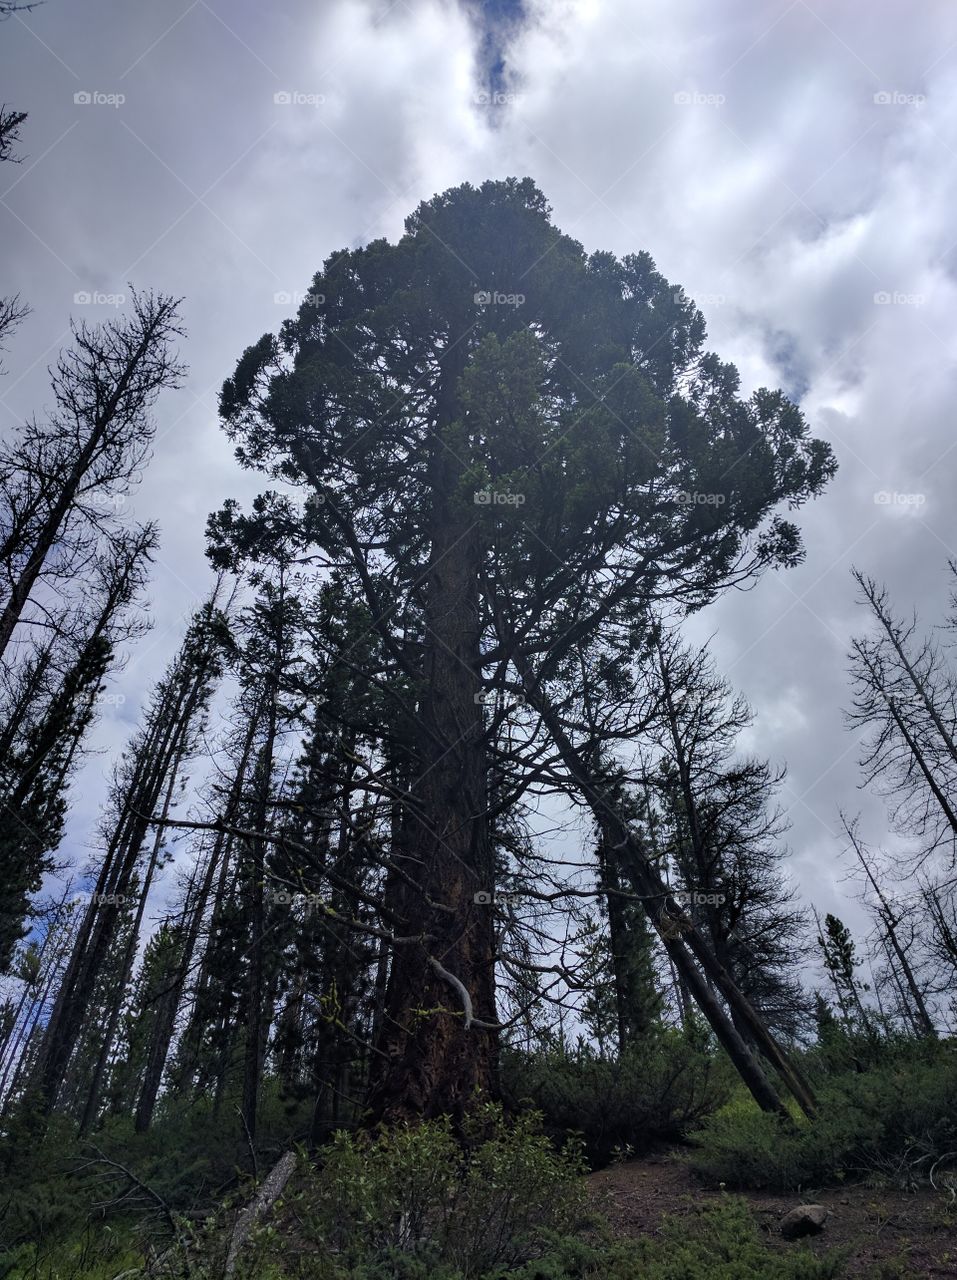 towering Douglas fir